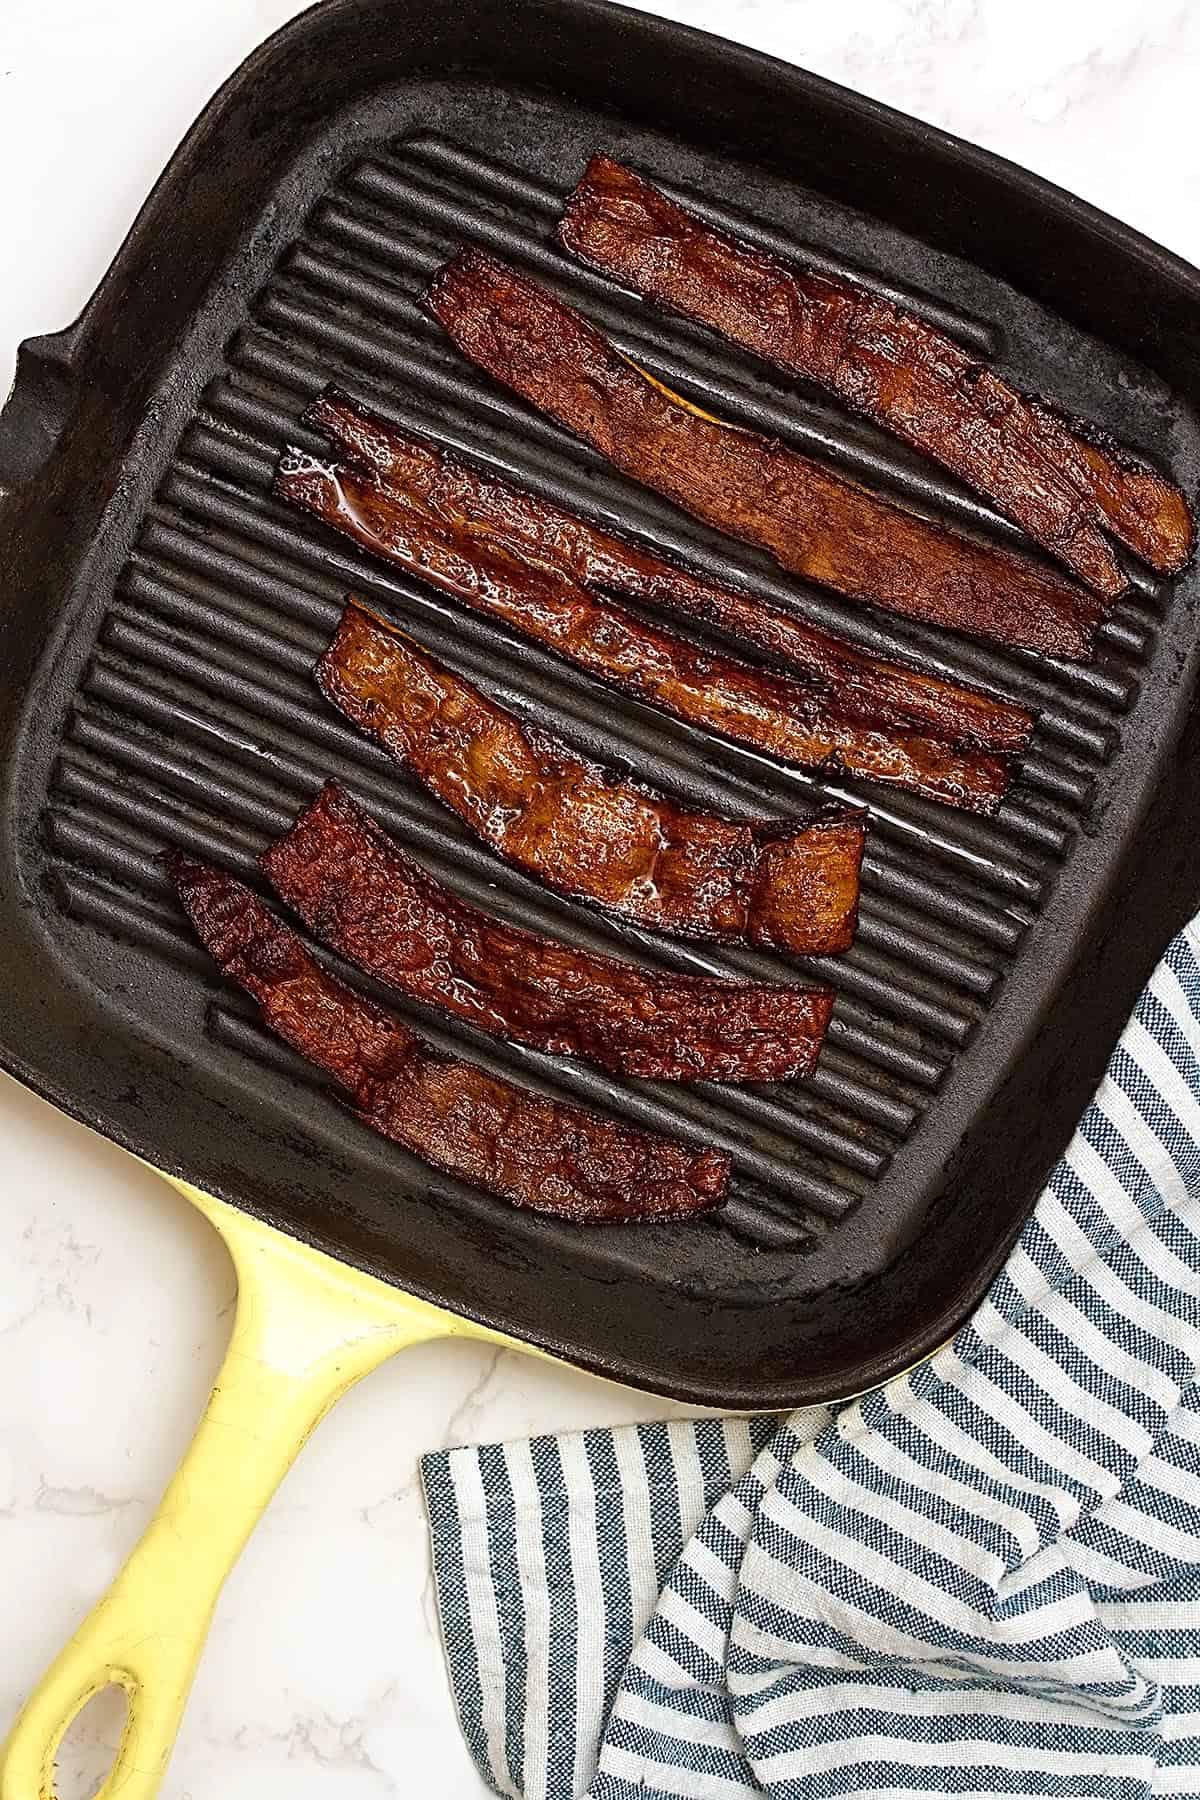 marinated banana baked in bacon